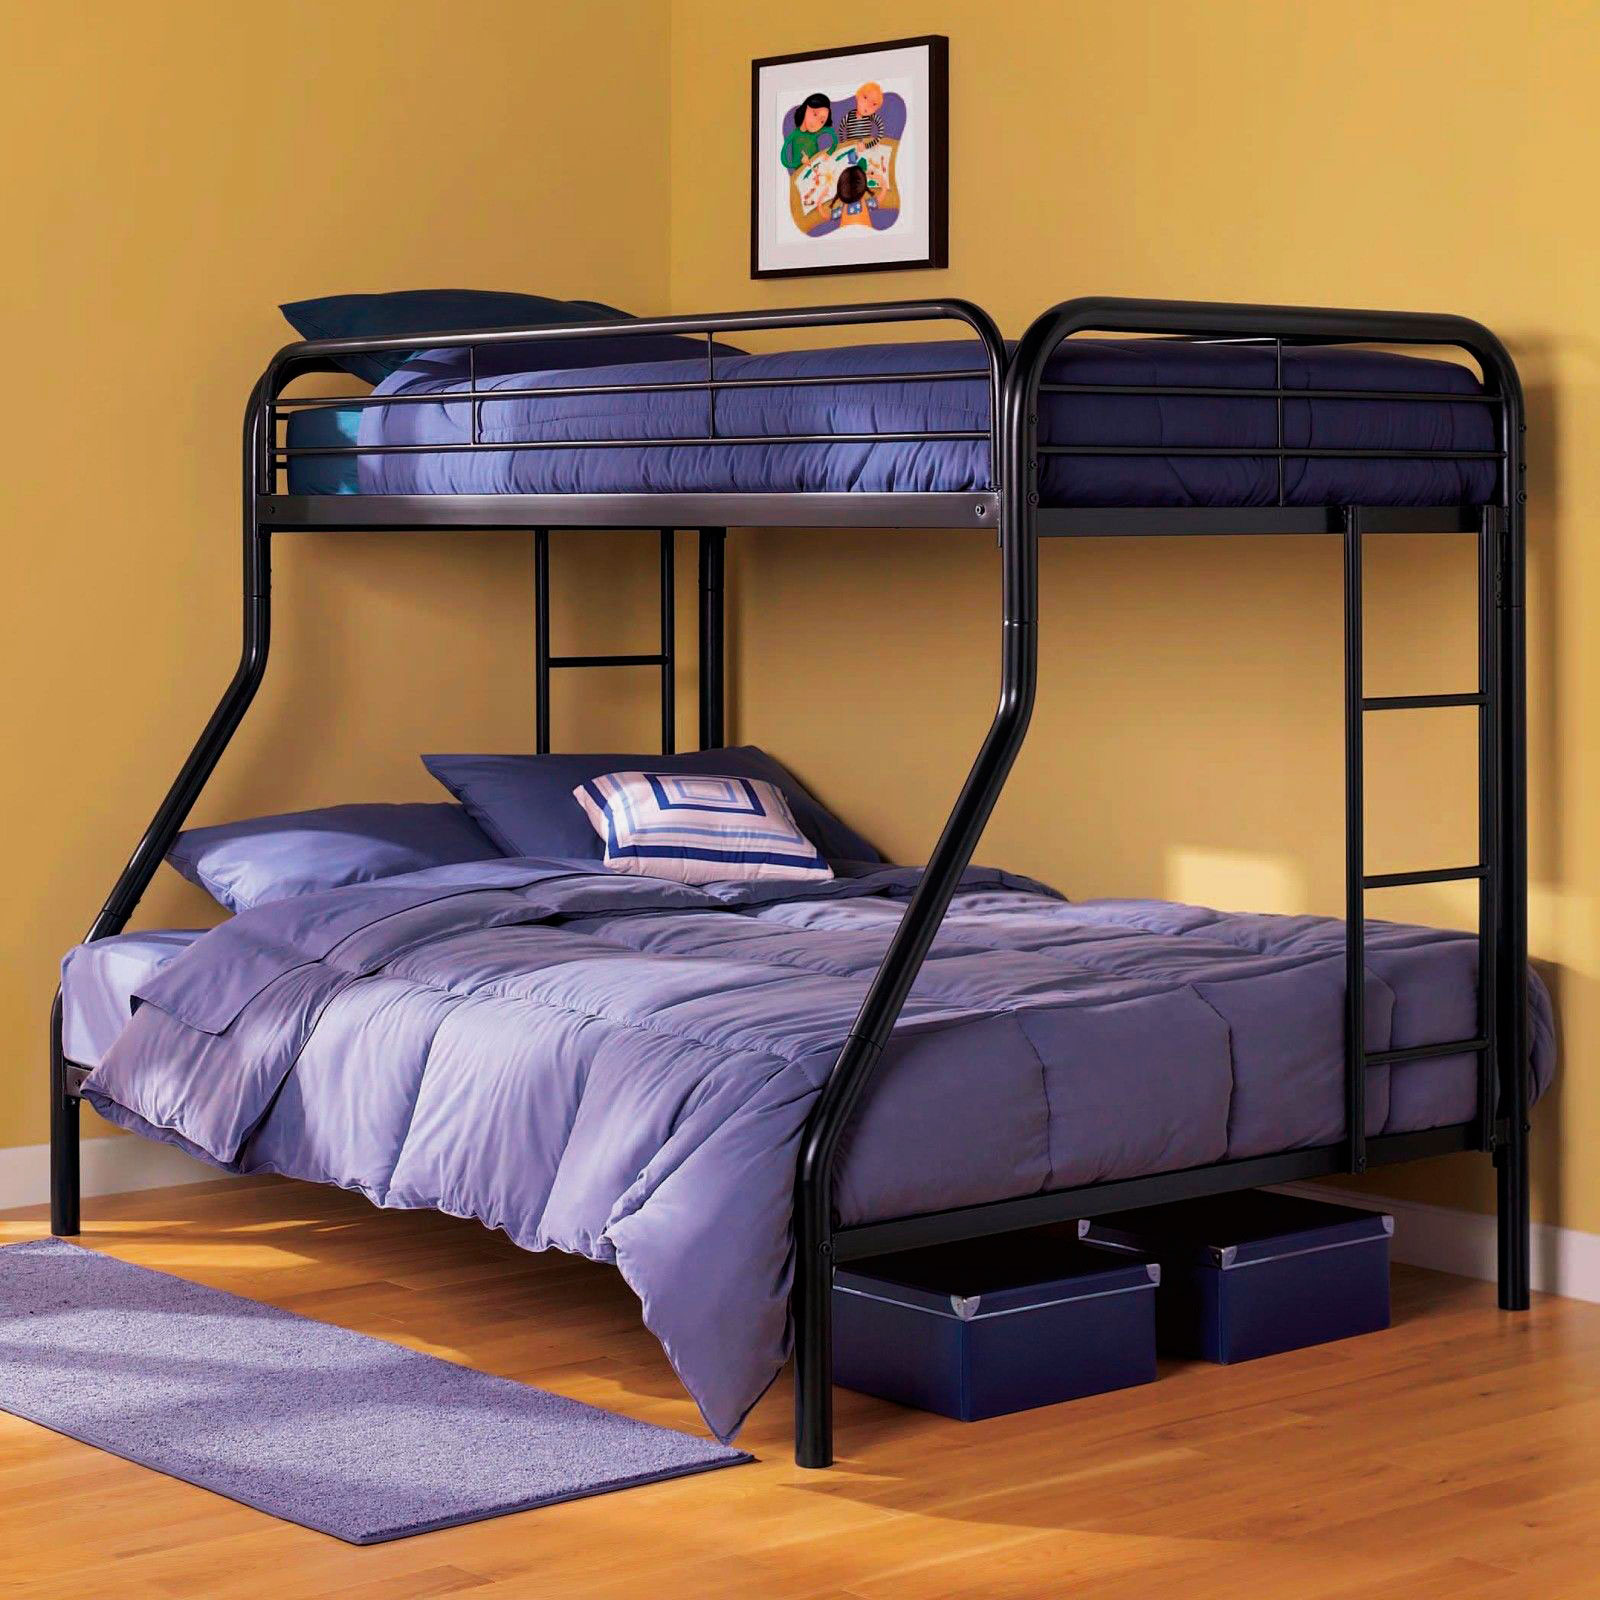 Двухъярусная кровать Gunmetal Full/Full Bunk Bed